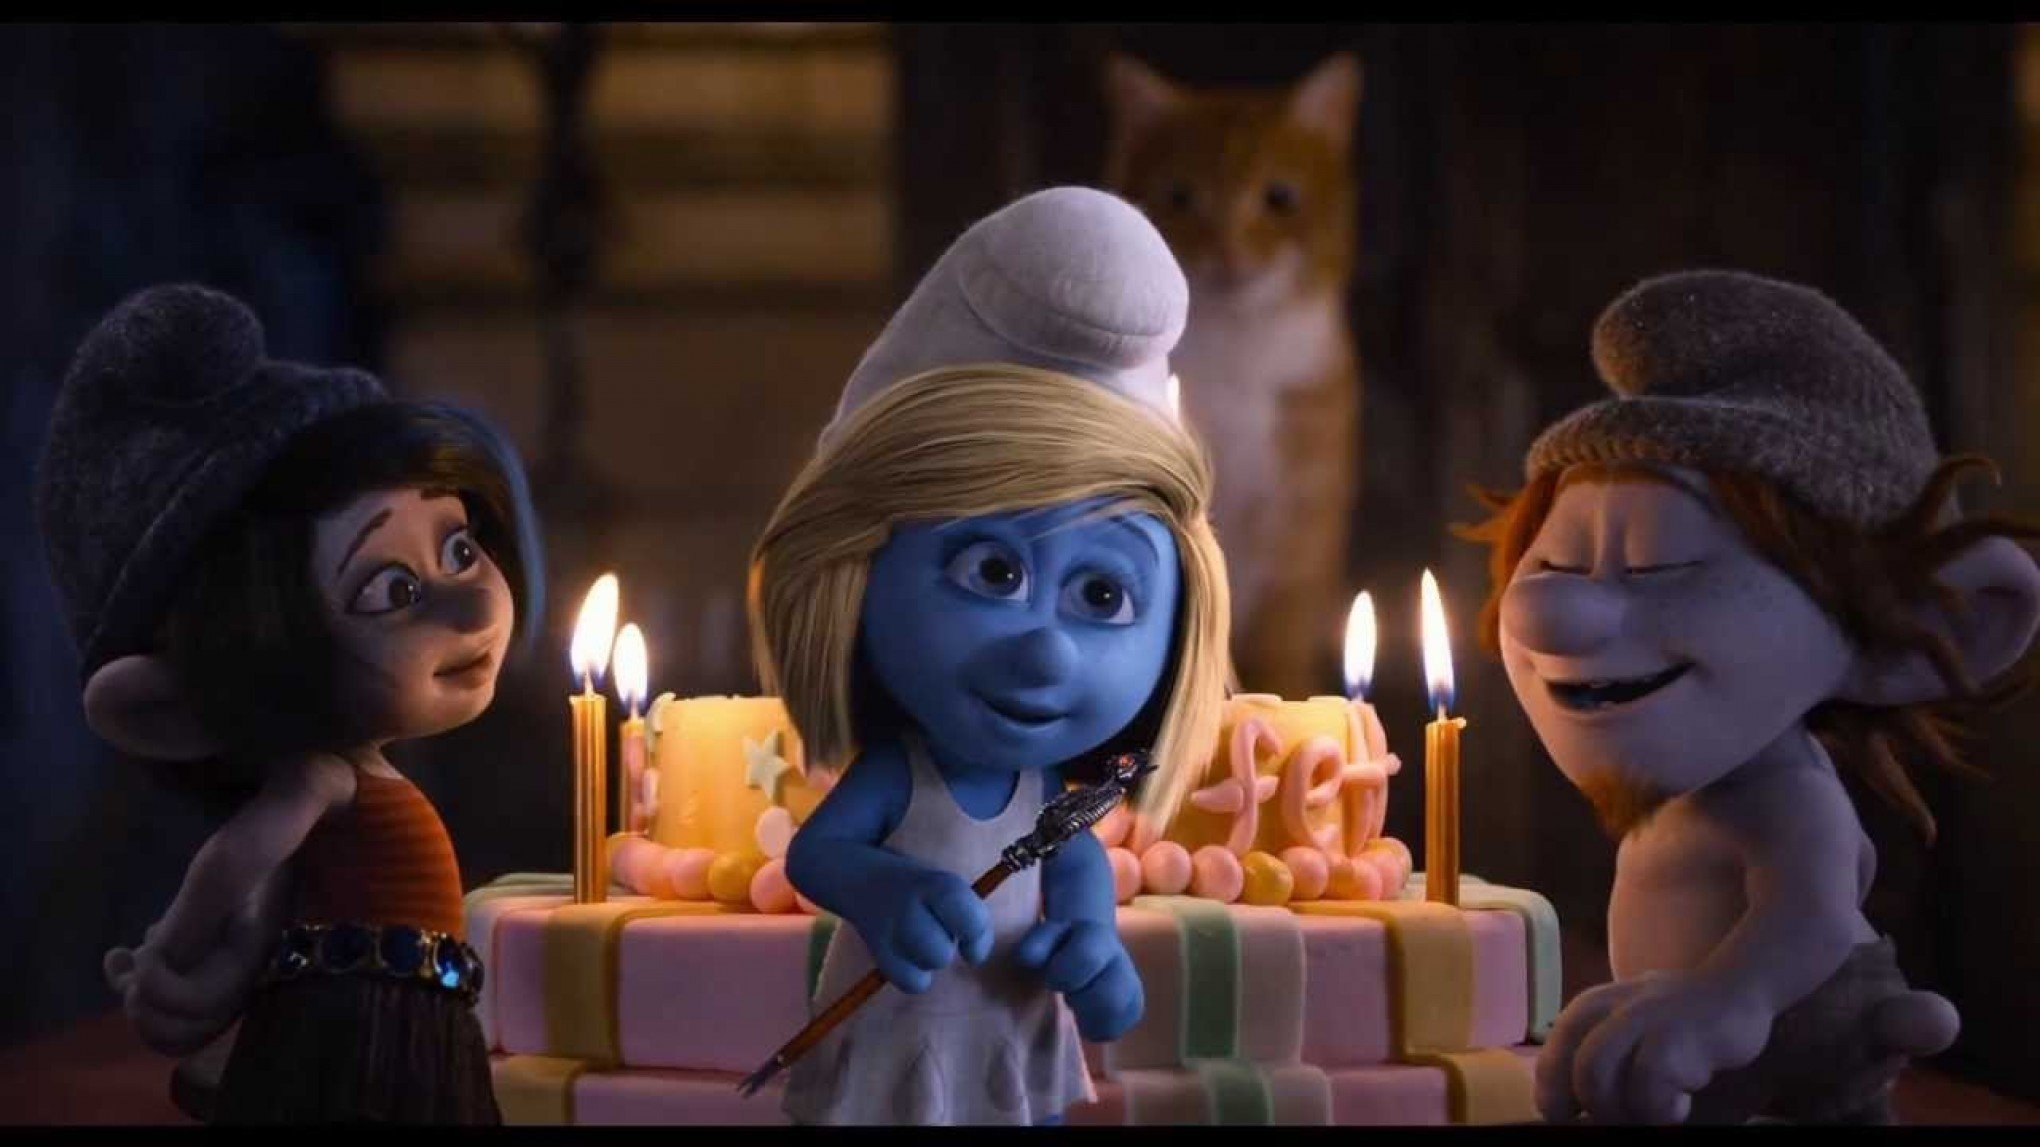 Os Smurfs: Filme musical sobre o desenho deve estrear em 2023